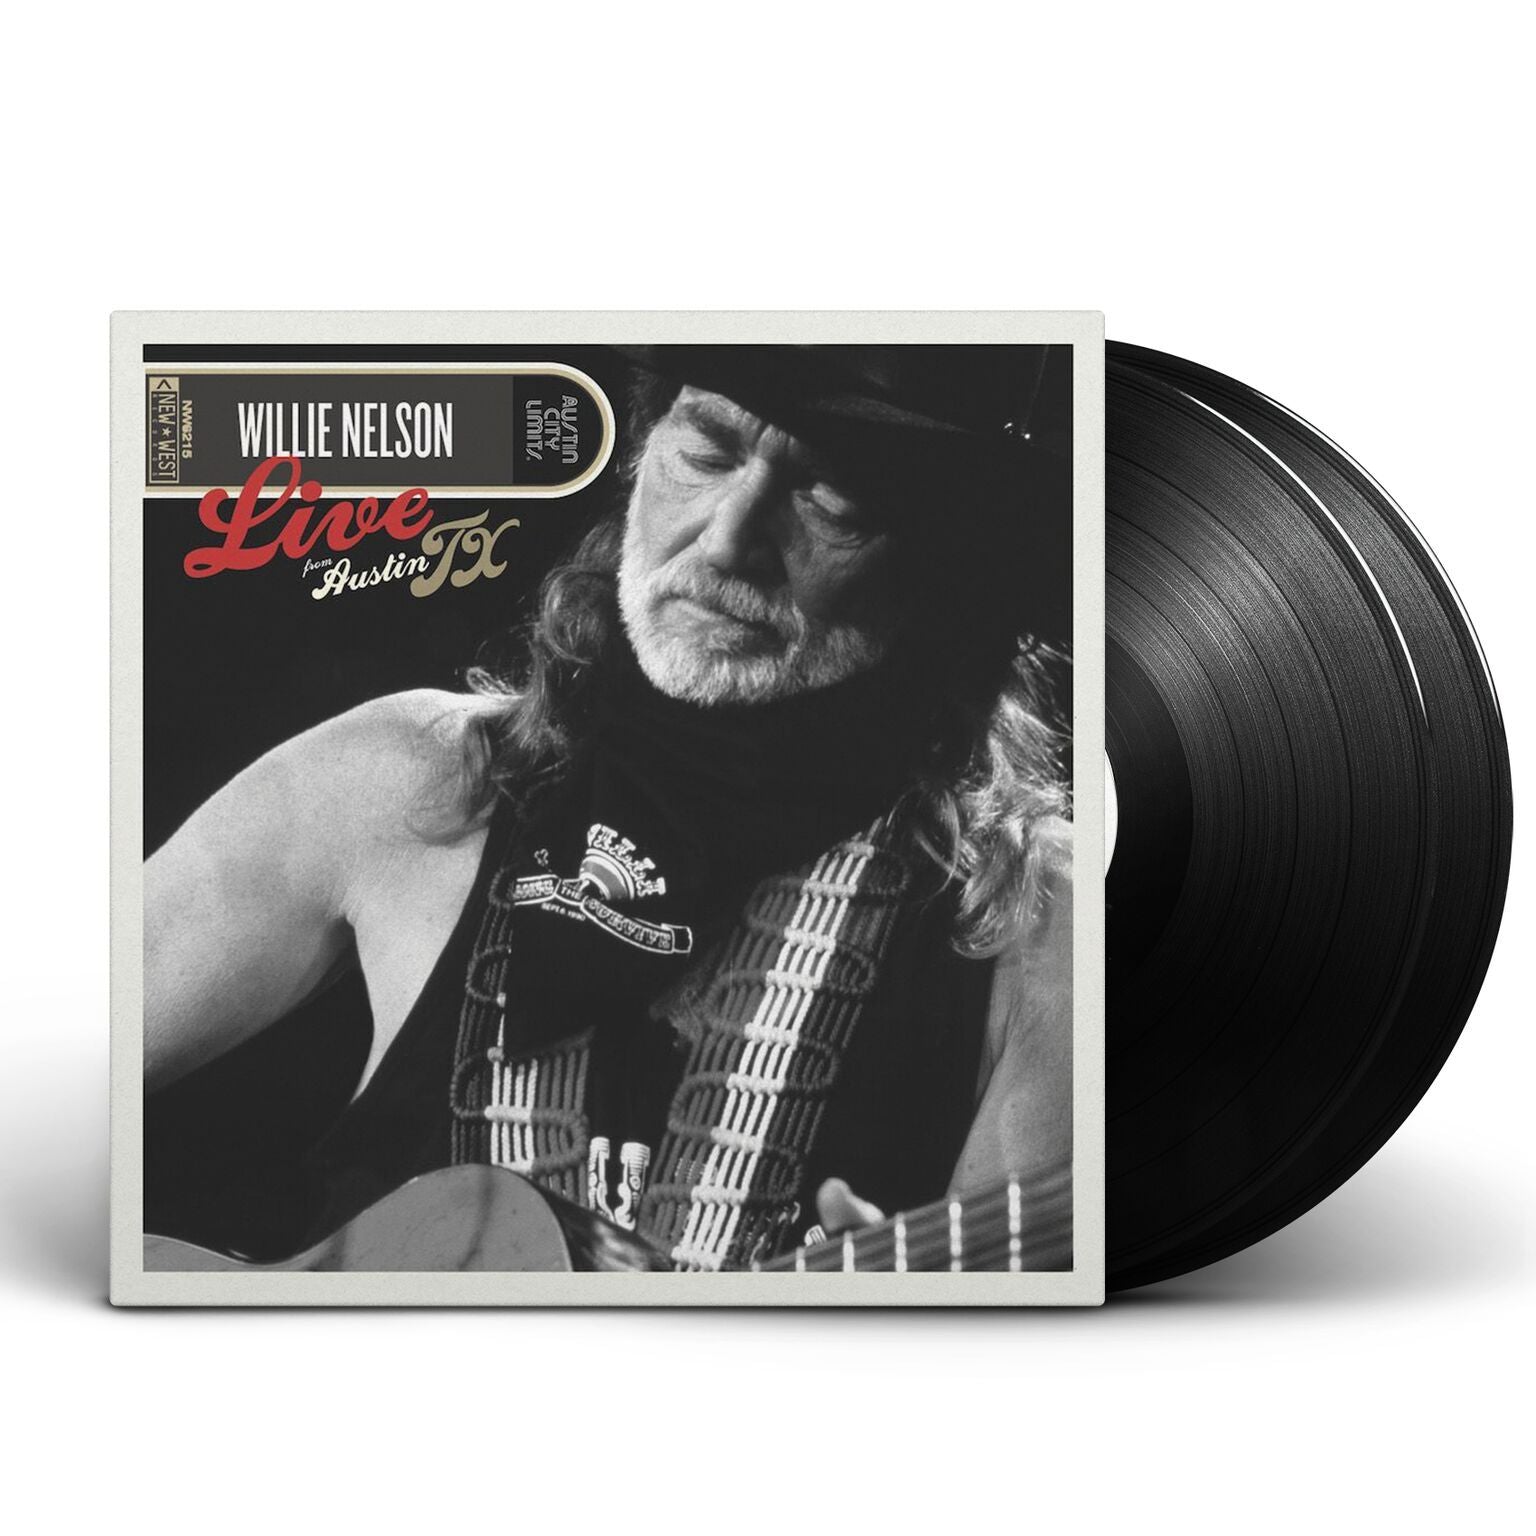 Willie Nelson - Live From Austin, TX [Vinyl]